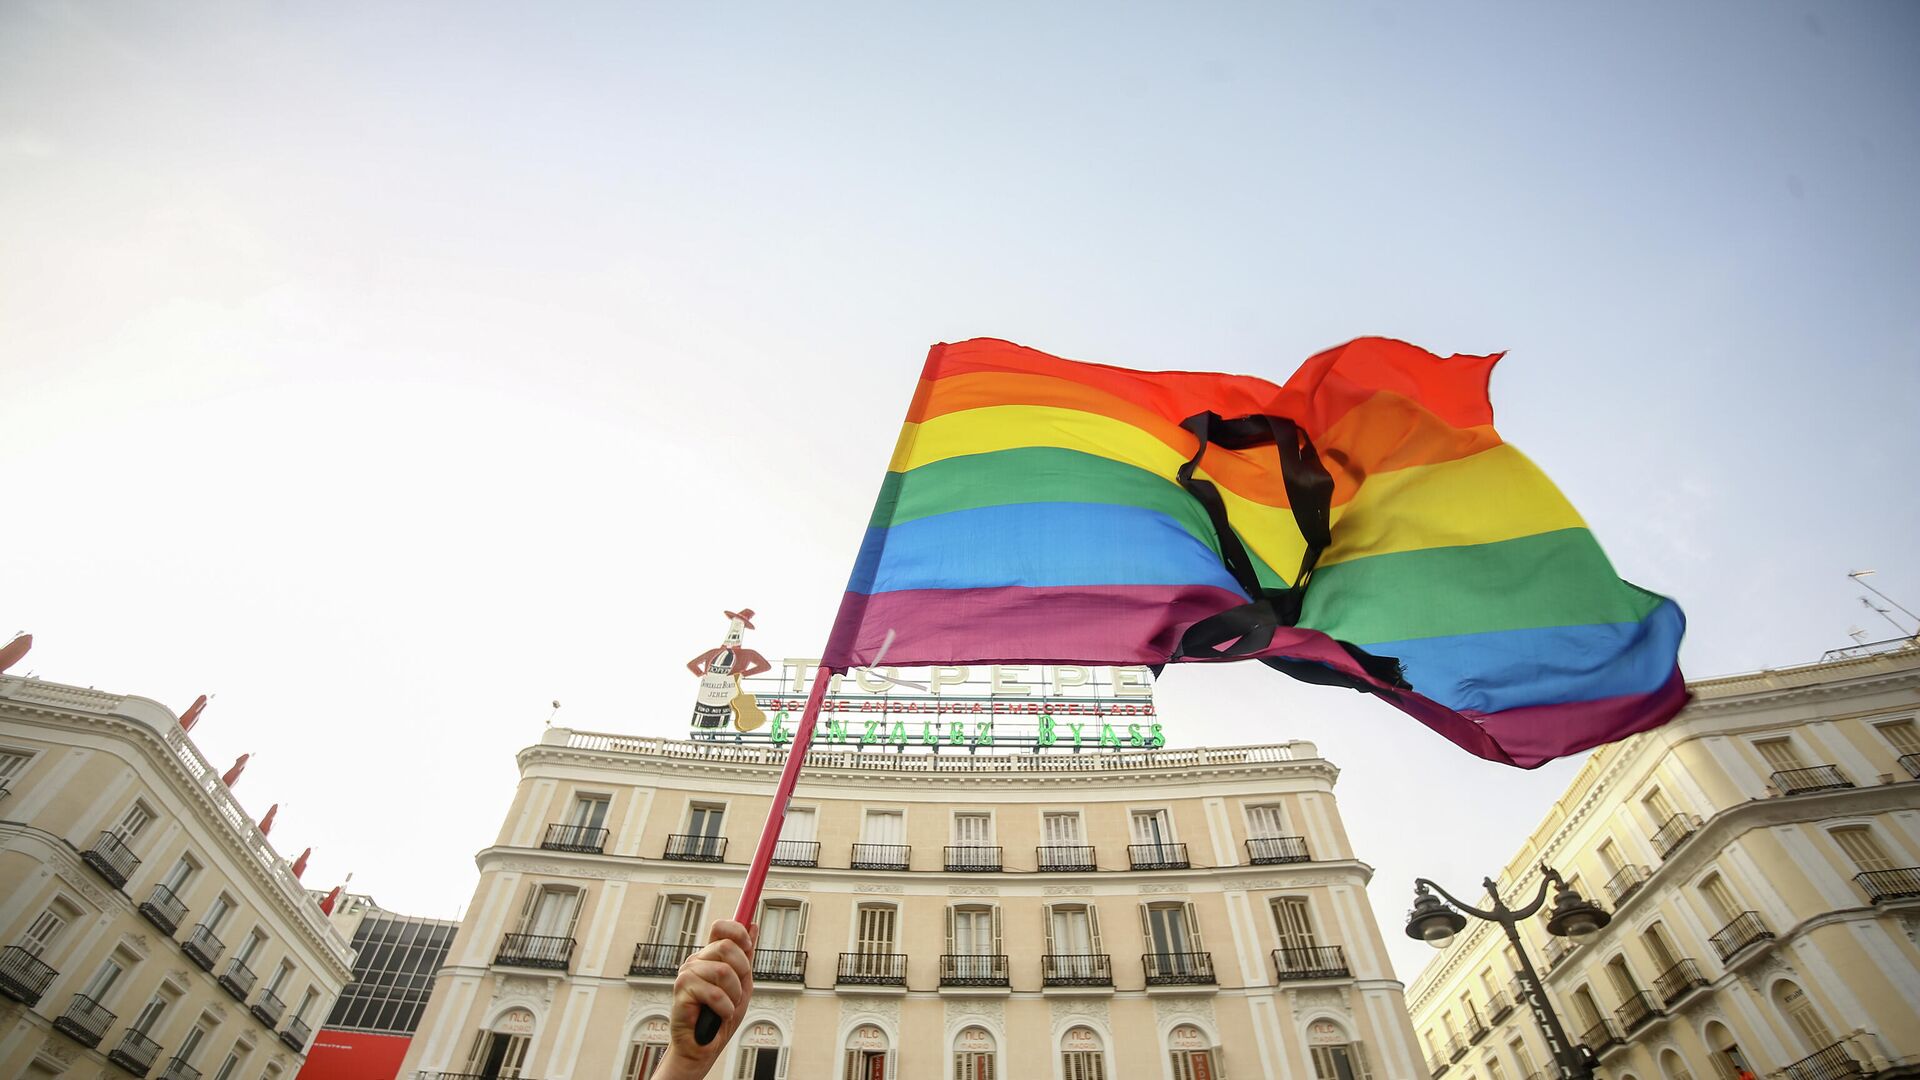 Una bandera LGBTI en una protesta contra homofobia en Madrod, España - Sputnik Mundo, 1920, 13.07.2021